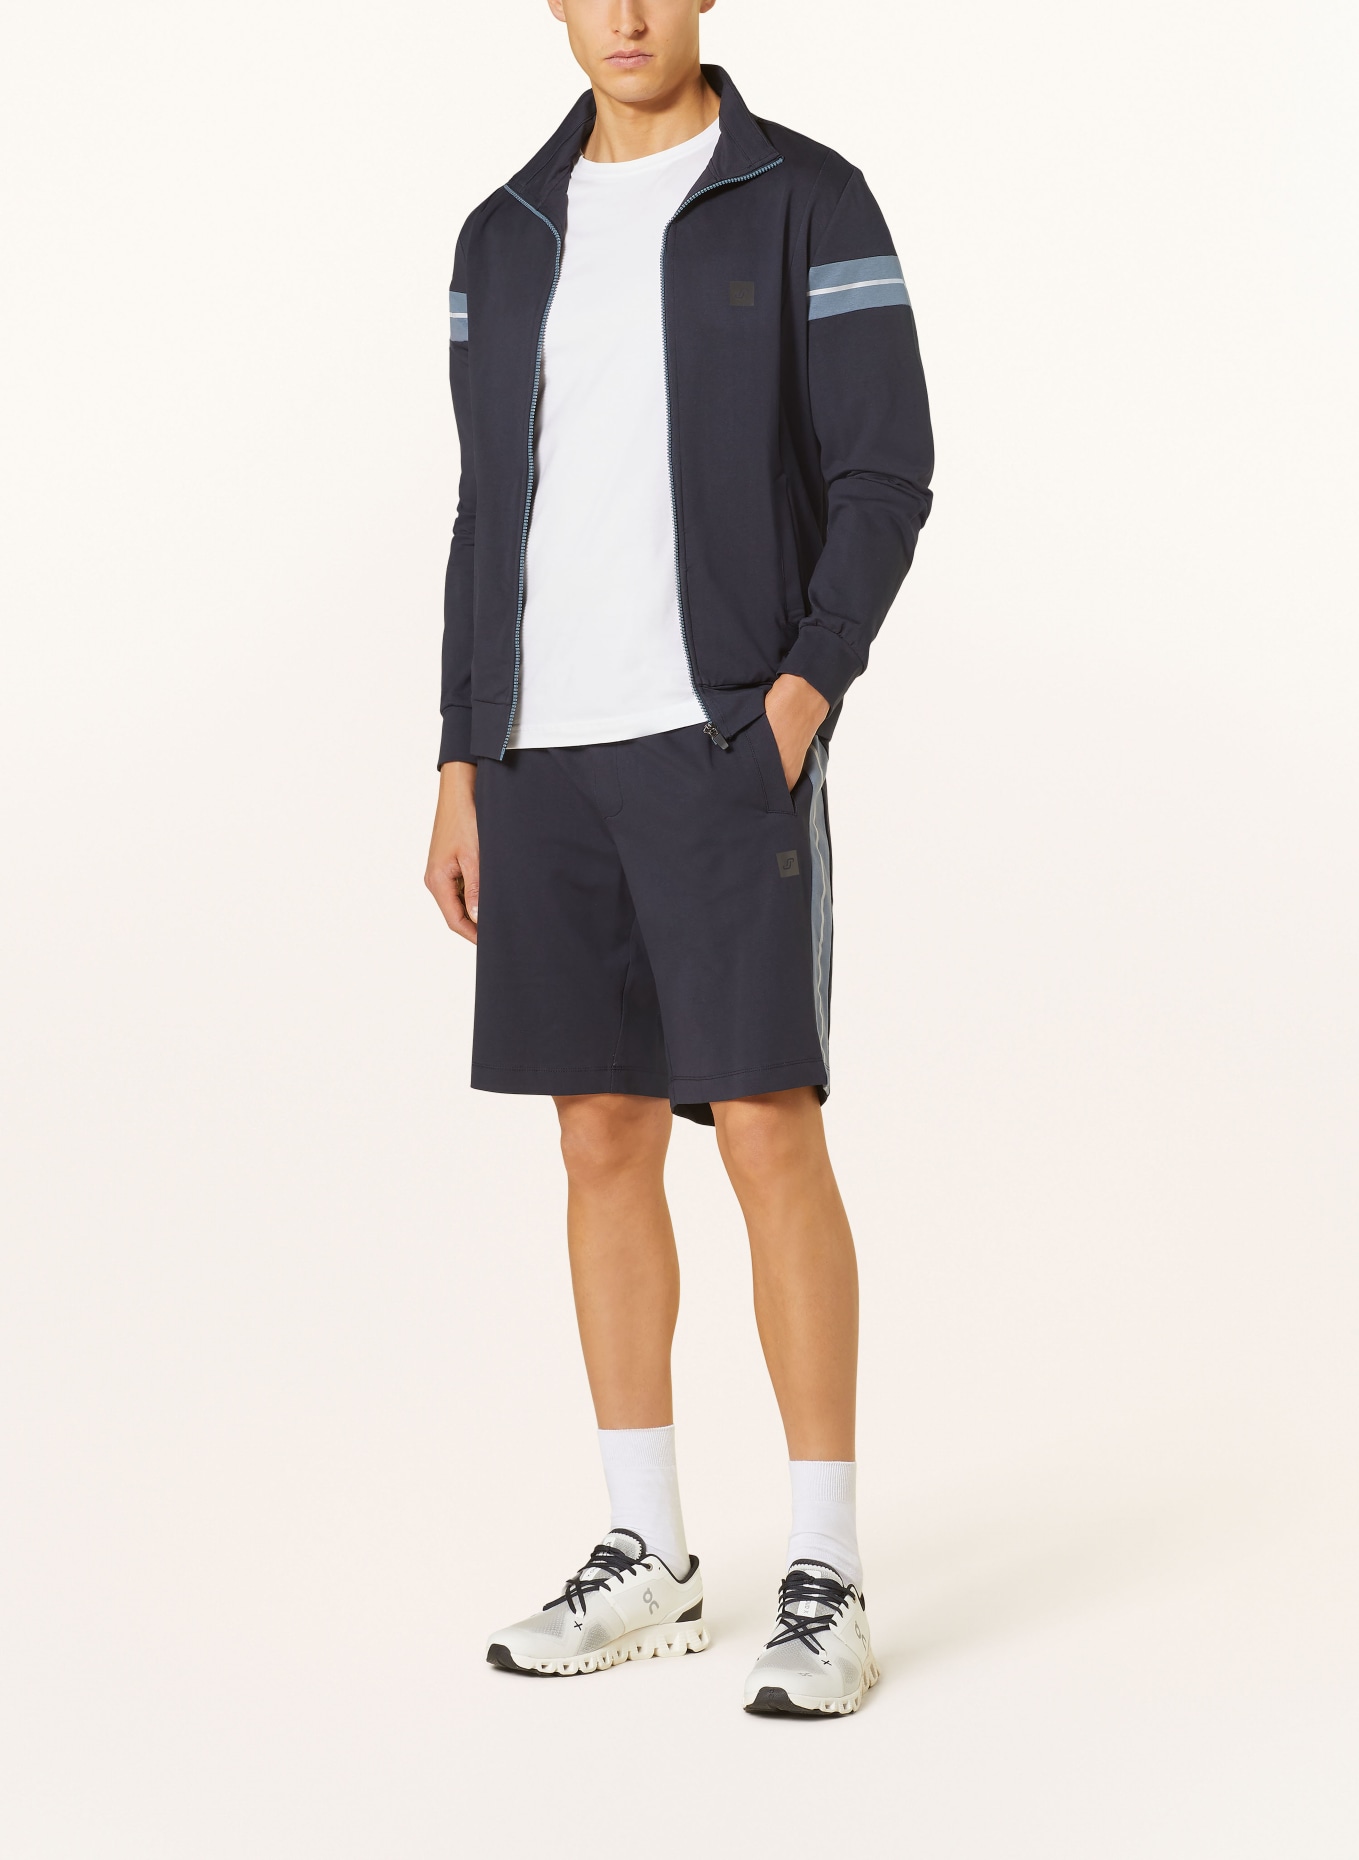 JOY sportswear Sweat shorts JESKO regular fit, Color: DARK BLUE (Image 2)